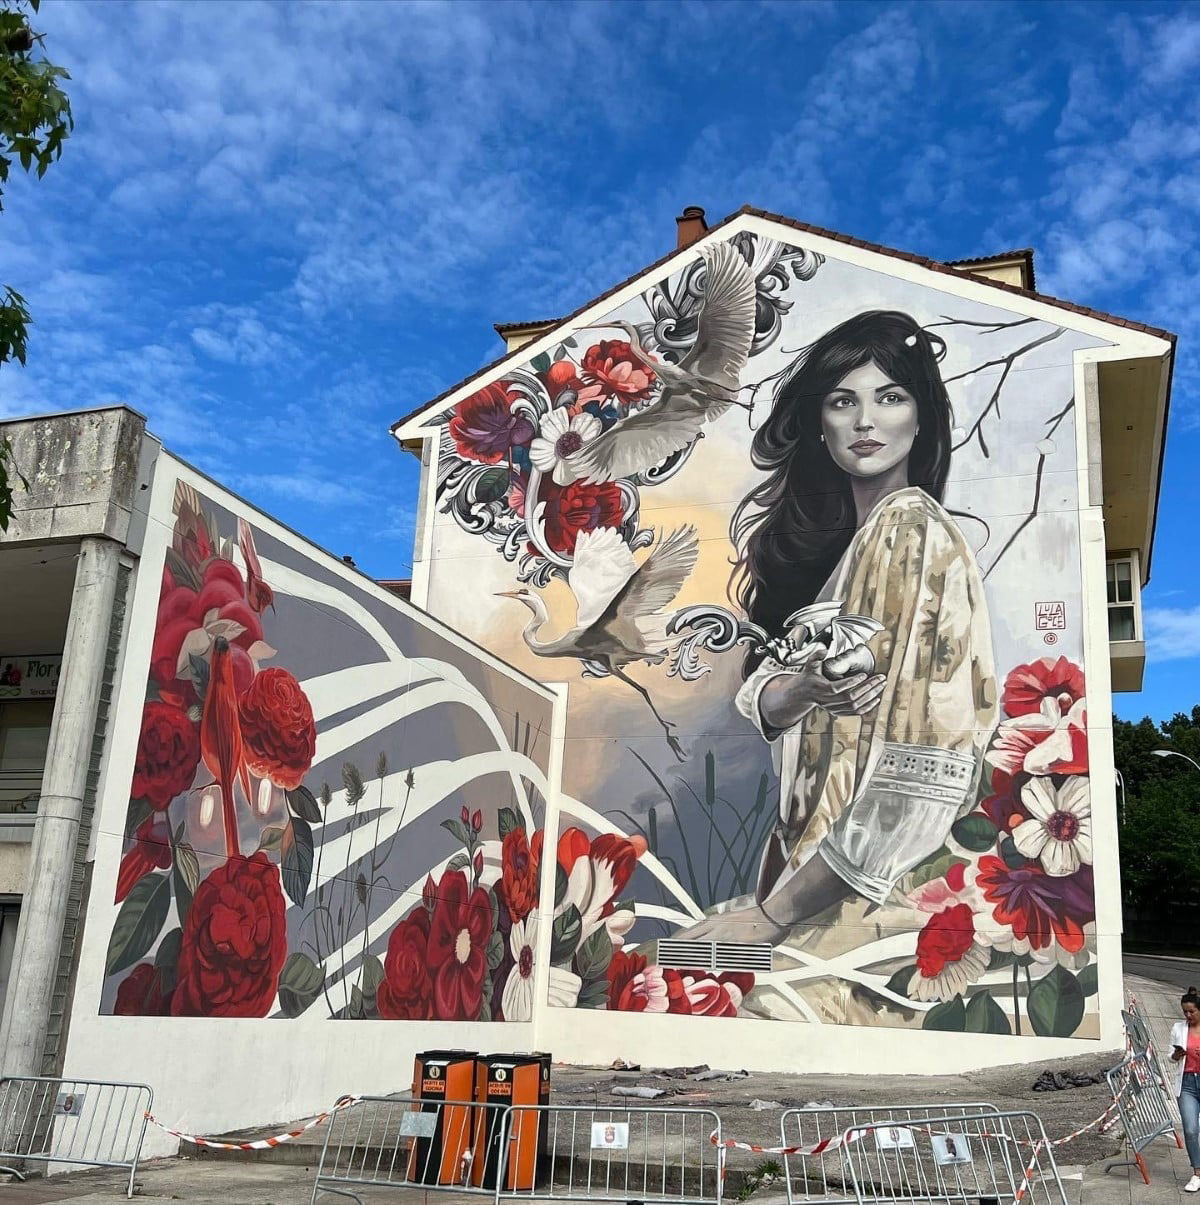 Impressionante mural na Espanha  uma celebrao da natureza e da feminilidade